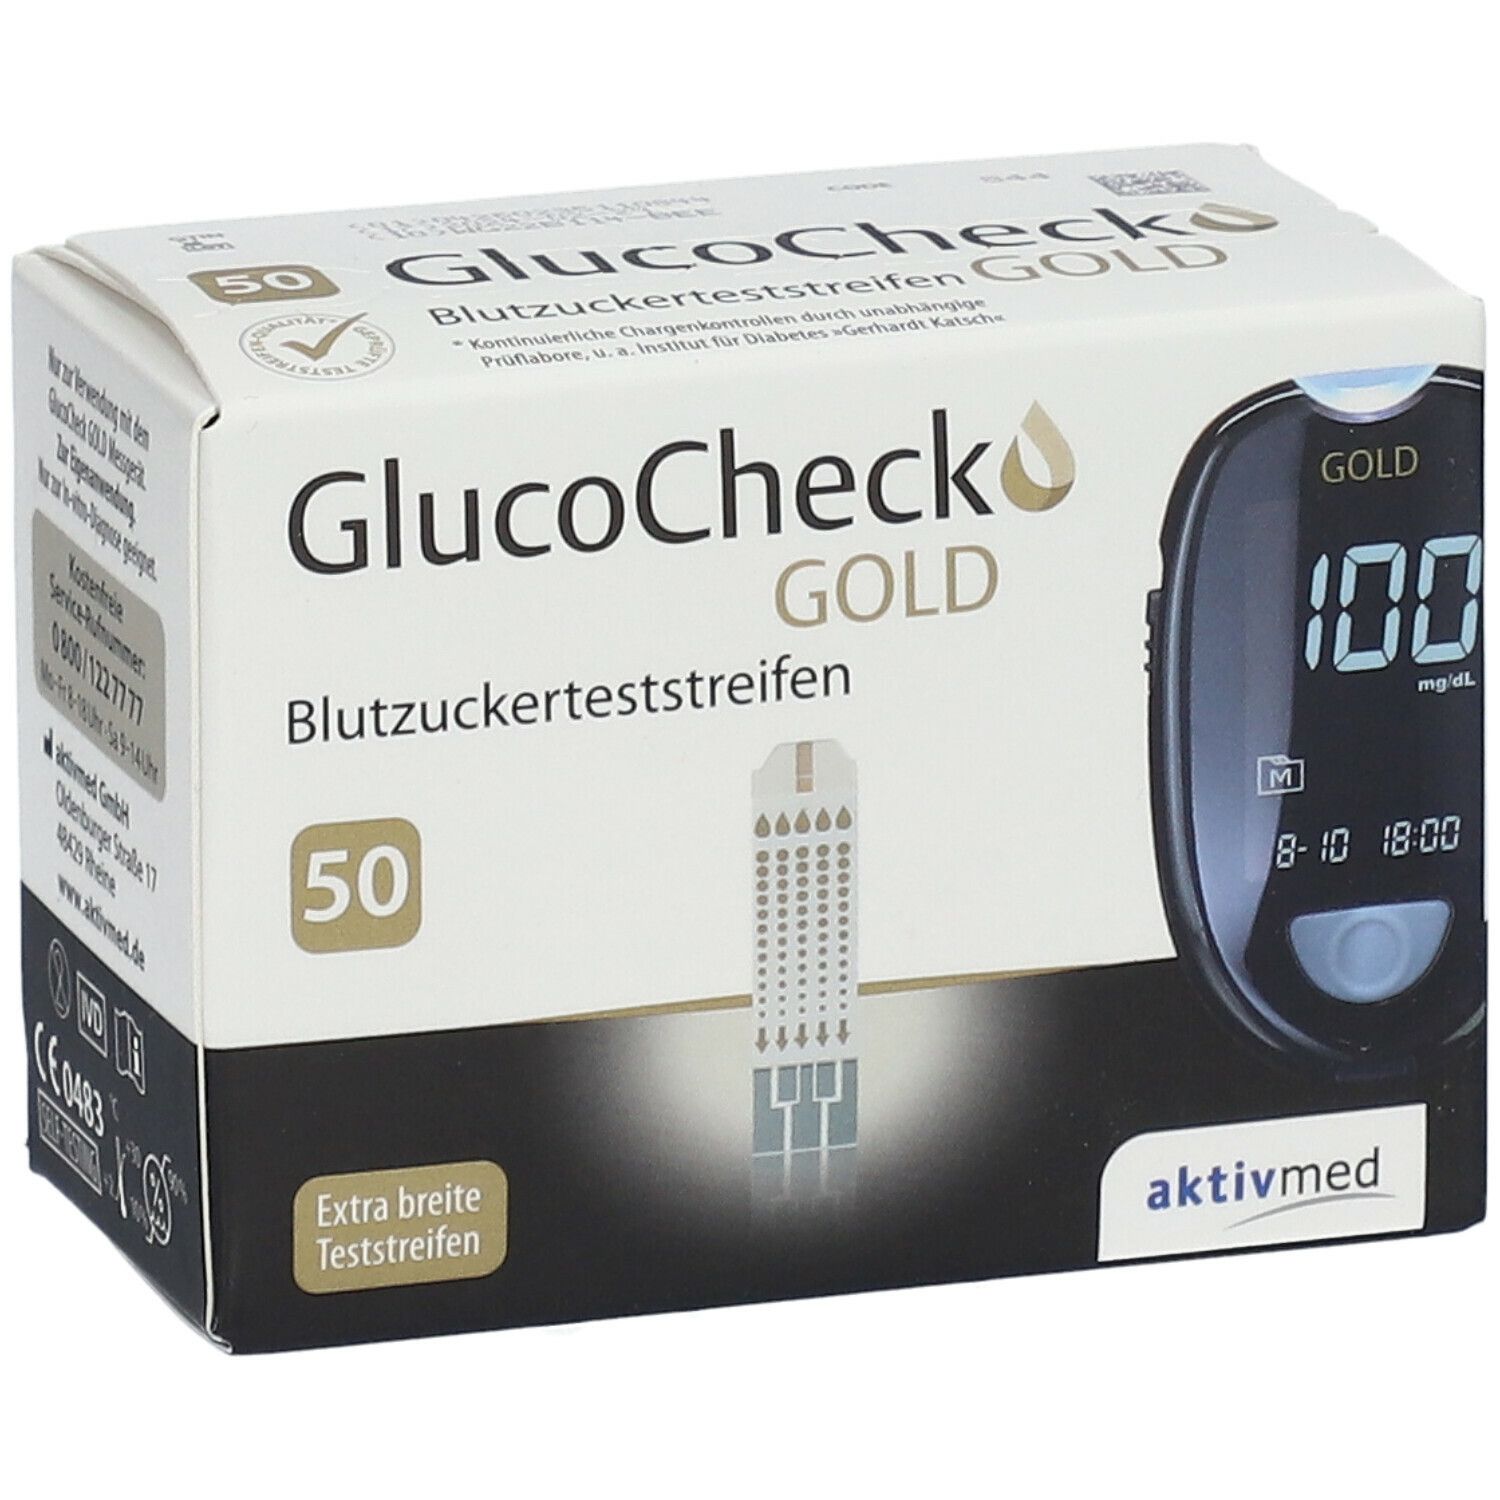 GlucoCheck GOLD Blutzuckerteststreifen